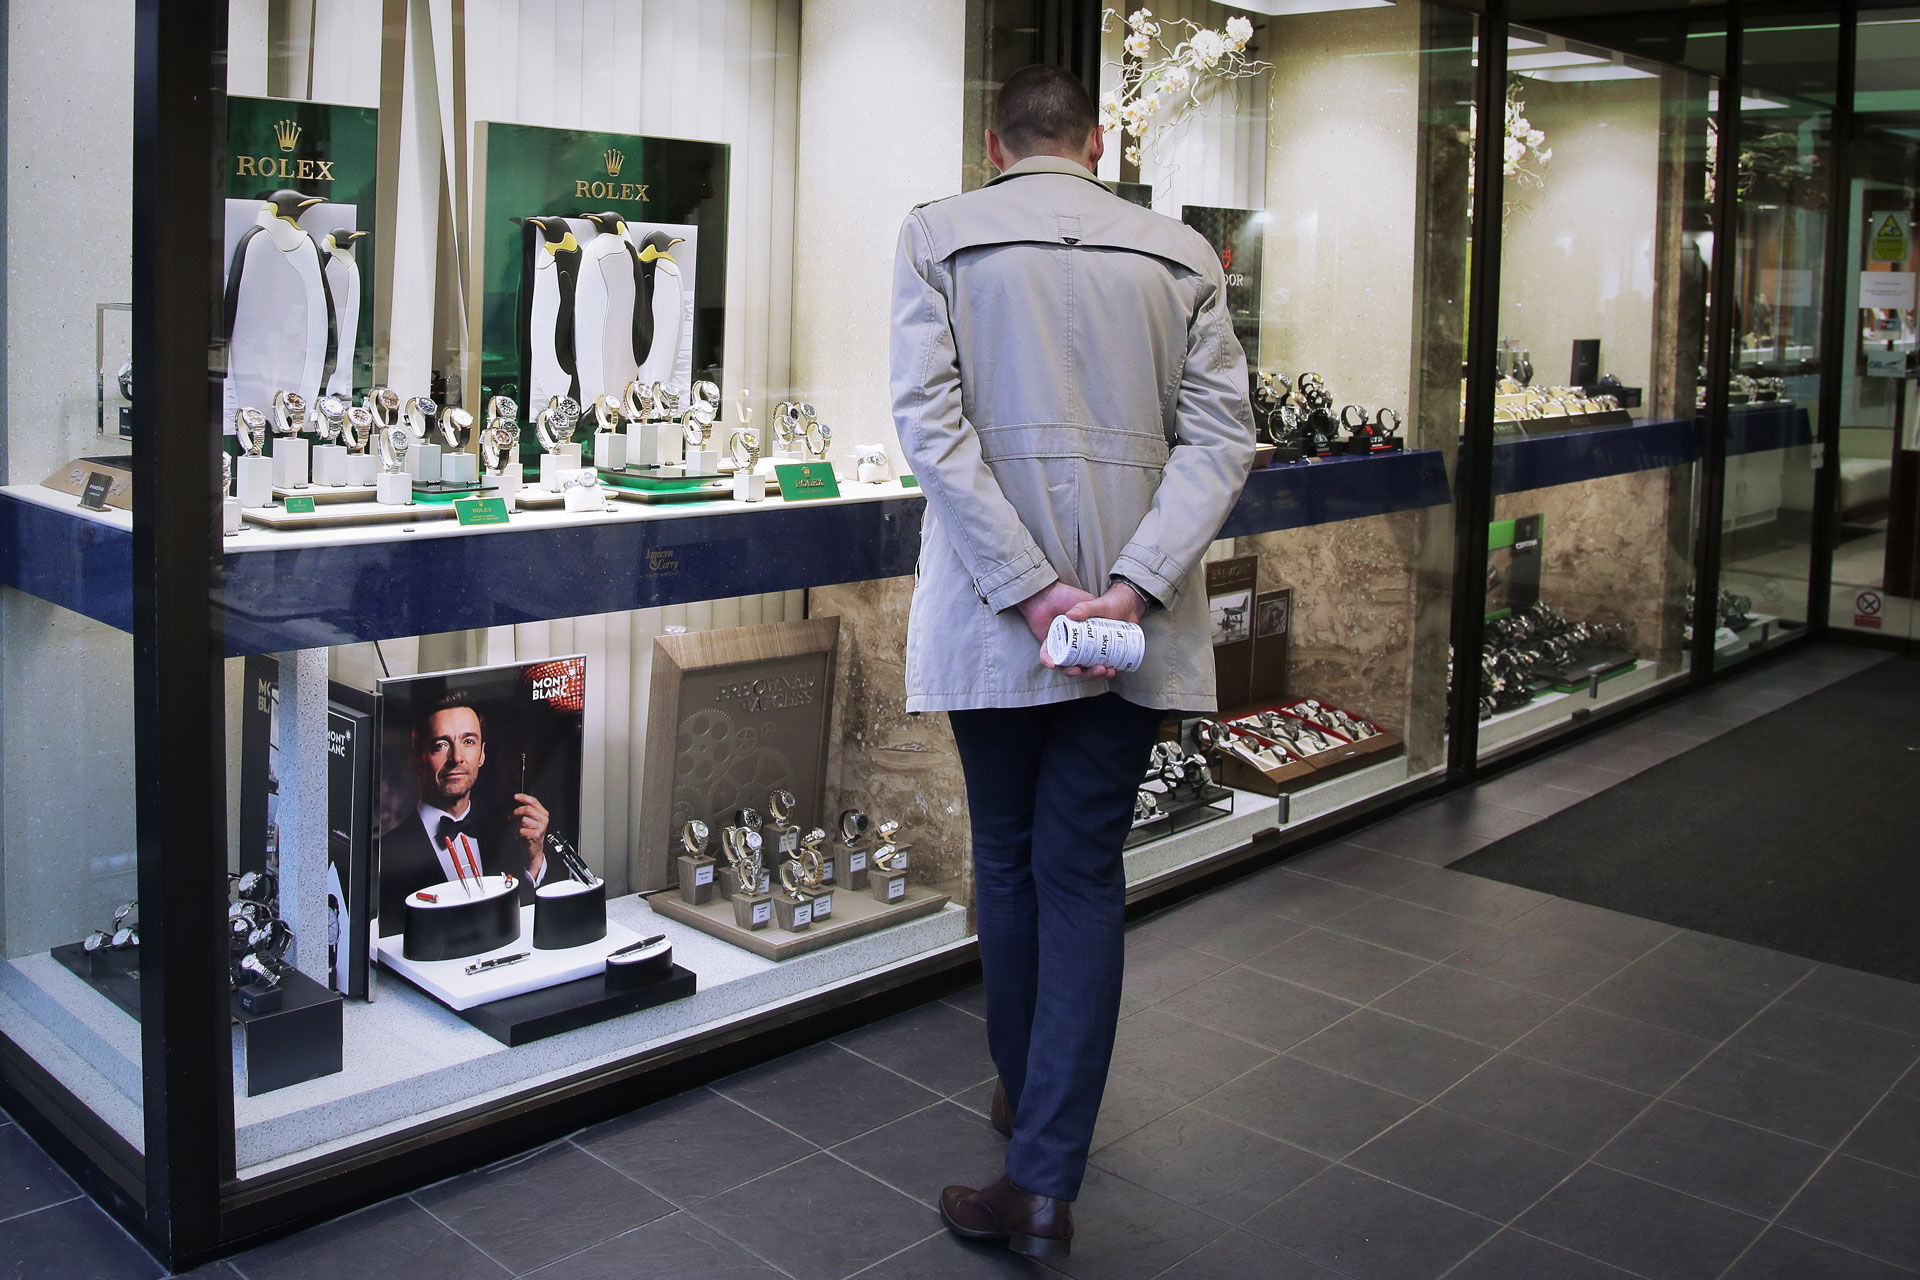 Spillselskapet Niklas jobbet for gikk langt for å pleie kundene sine, hevder han. En Rolex-klokke kunne gjerne brukes som smøremiddel. Foto: Webjørn S. Espeland, NRK P3